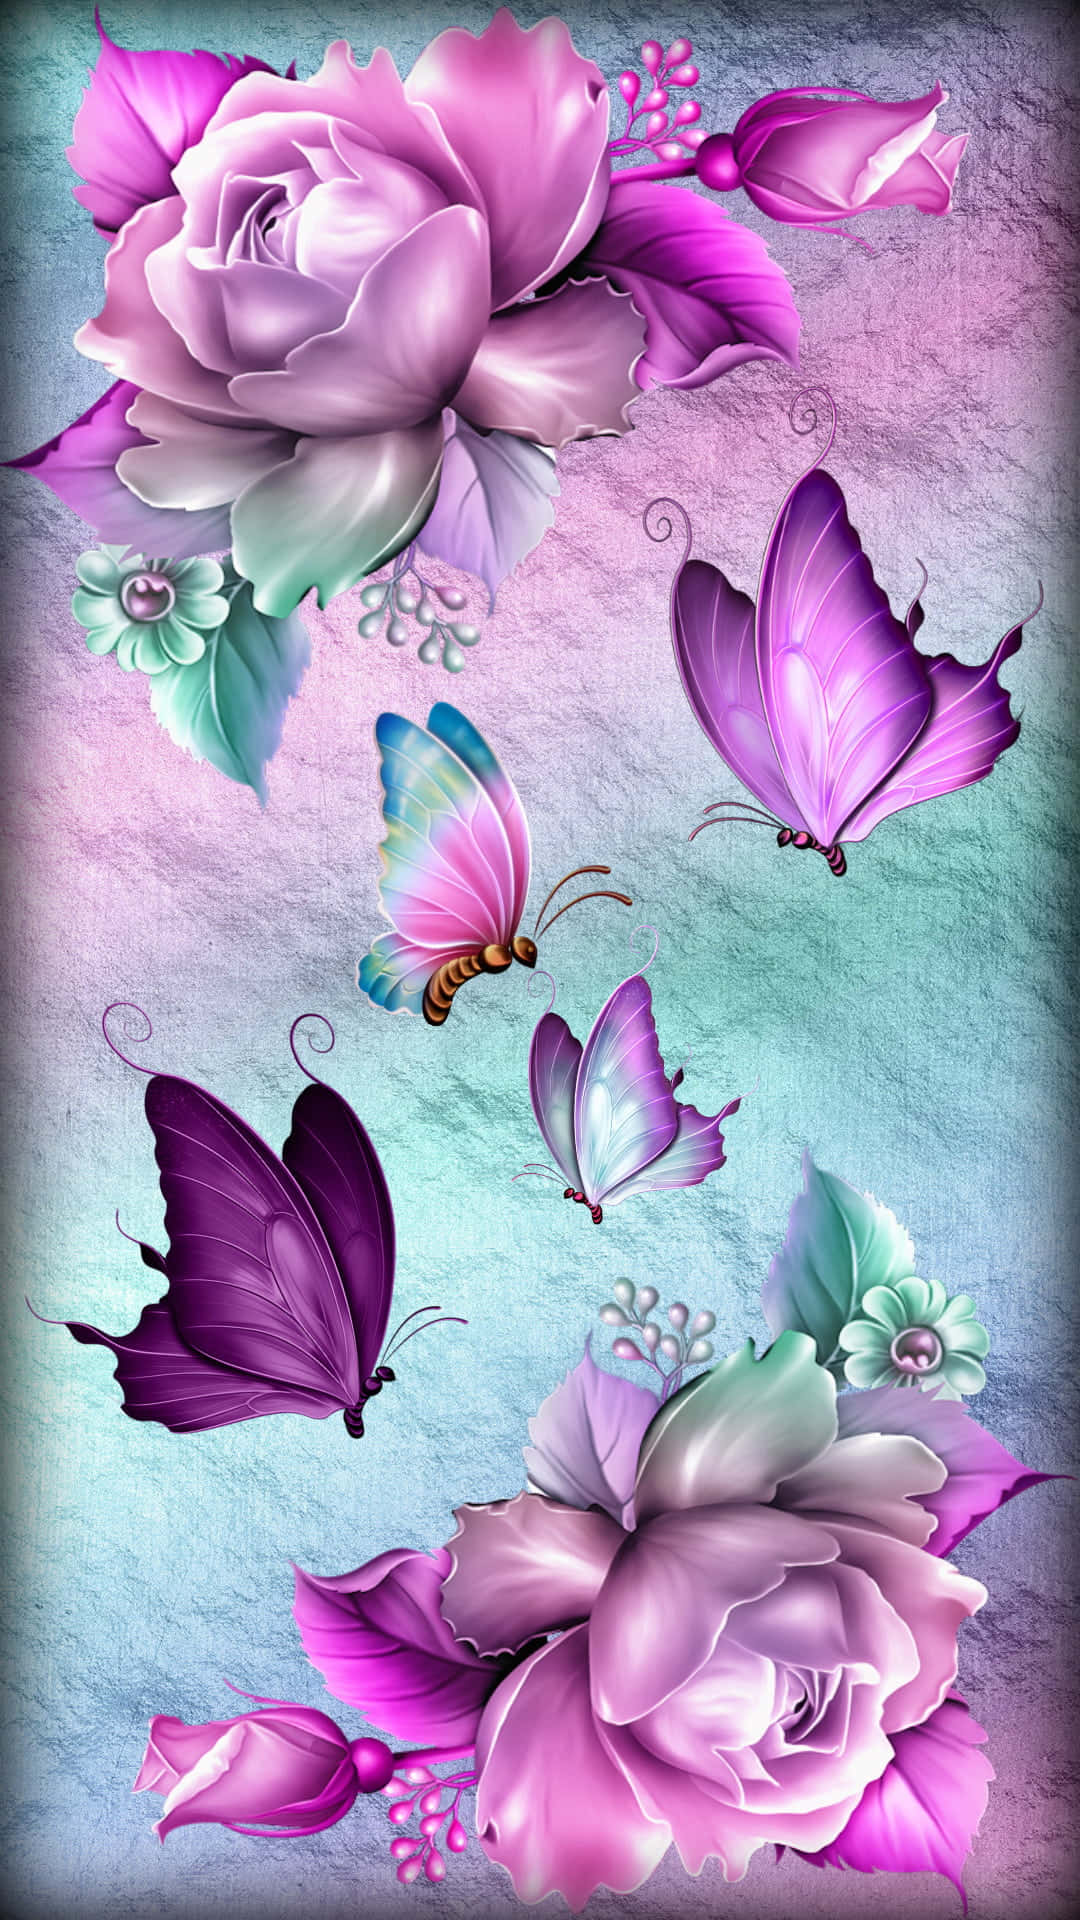 En pink og lilla blomst med sommerfugle på det.